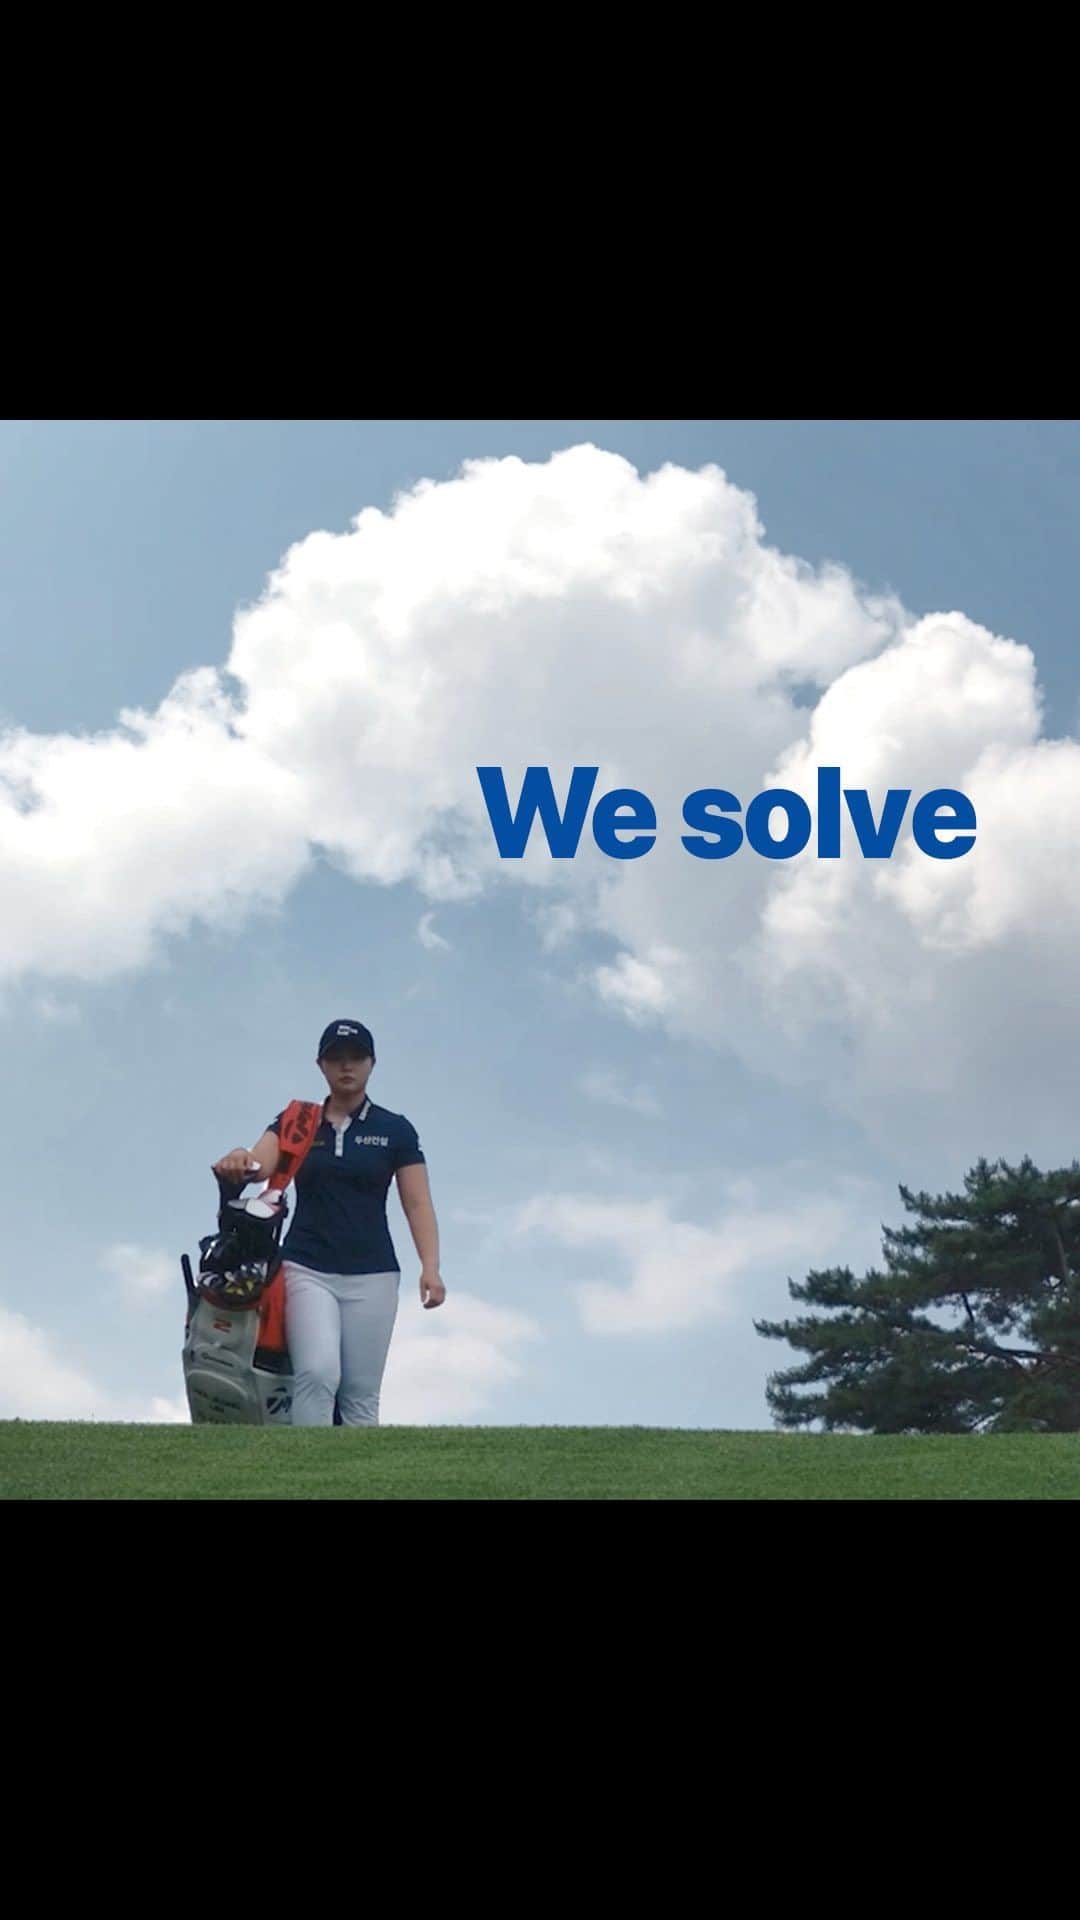 イム・ヒジョンのインスタグラム：「We solve, We’ve  골프를 슬기롭게 (Solve)하고 싶은 임희정 프로! 임희정 프로의 소망을 담은 두산건설 We’ve 브랜드 광고를 SBS Golf 채널에서도 만나보세요.  임희정 프로가 Save를 선택한 자세한 이유가 궁금하시다면?!! 상단 프로필 [두산건설 We’ve 선수소개] 링크에서 확인해보세요~  #두산건설 #Weve #두산건설Weve골프단 #Solve #임희정 @_heejeong_lim_」